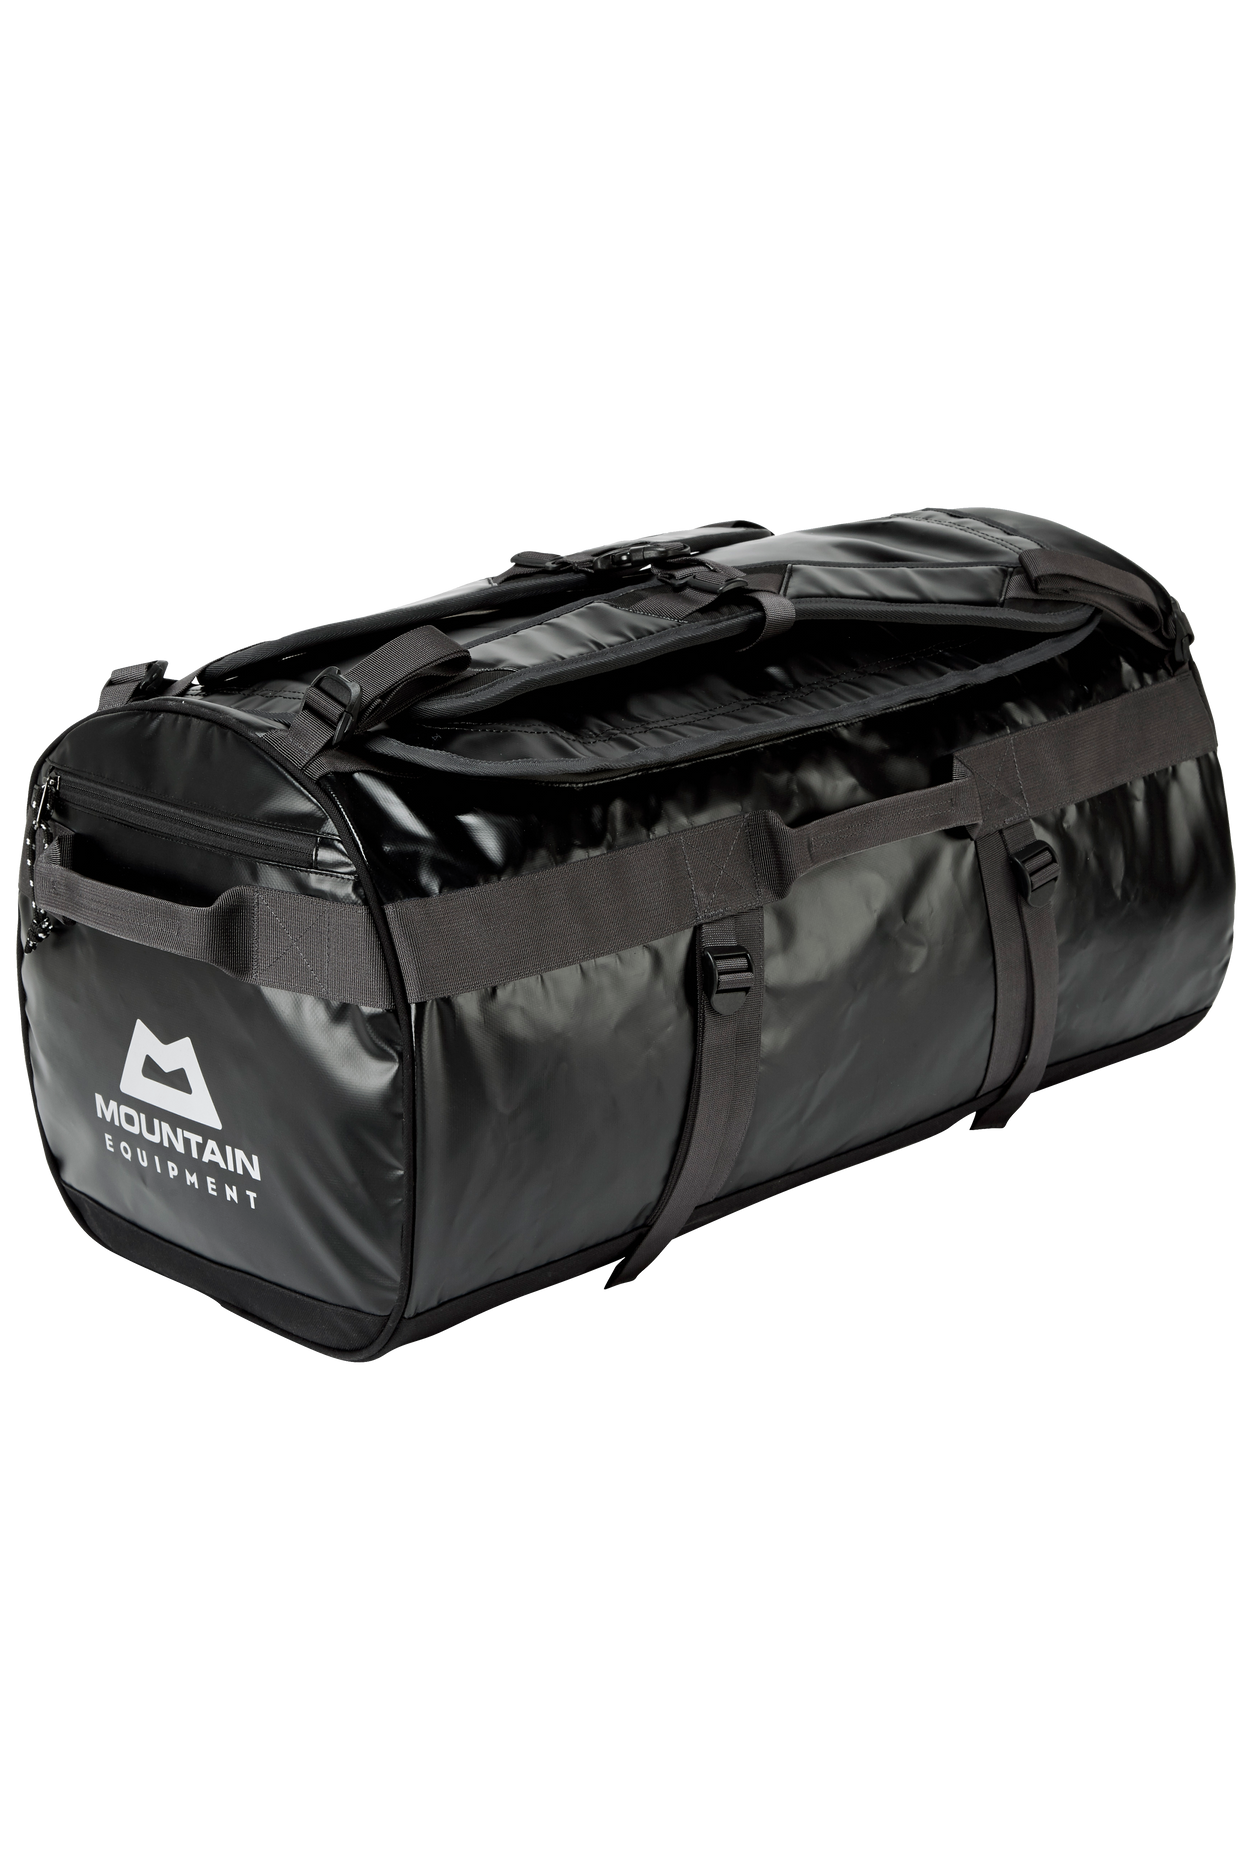 Mountain Equipment cestovní taška Wet & Dry 100L Kitbag